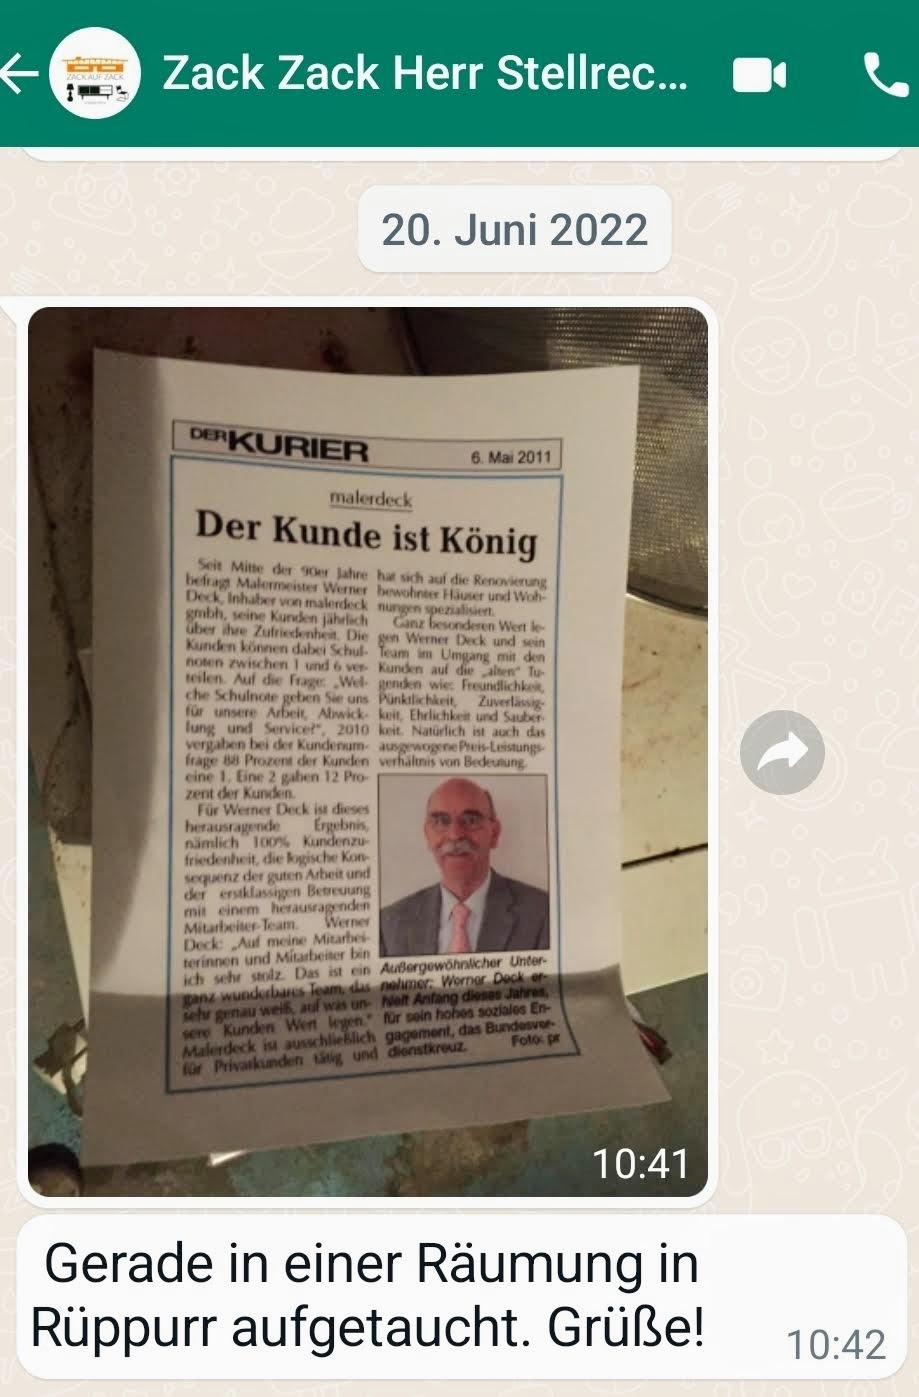 Zeitungsartikel über Werner Deck gefunden